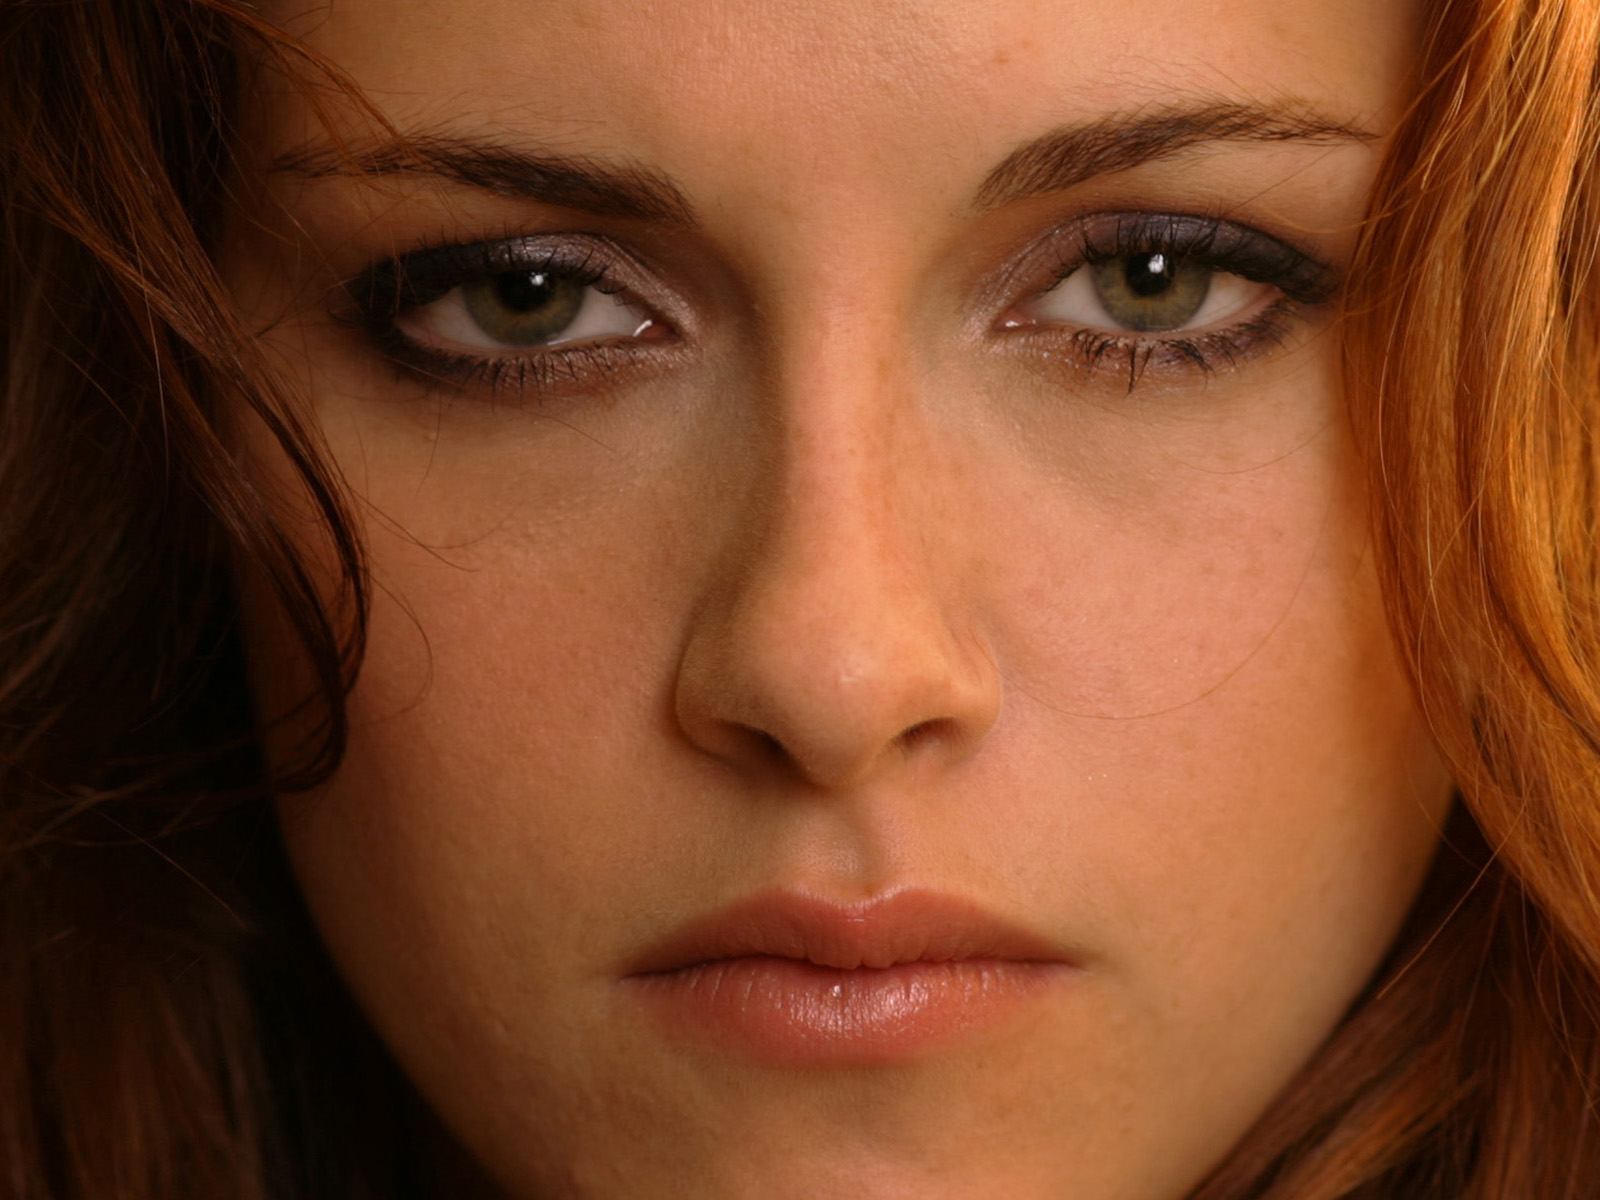 Kristen Stewart Close-Up Wallpapers